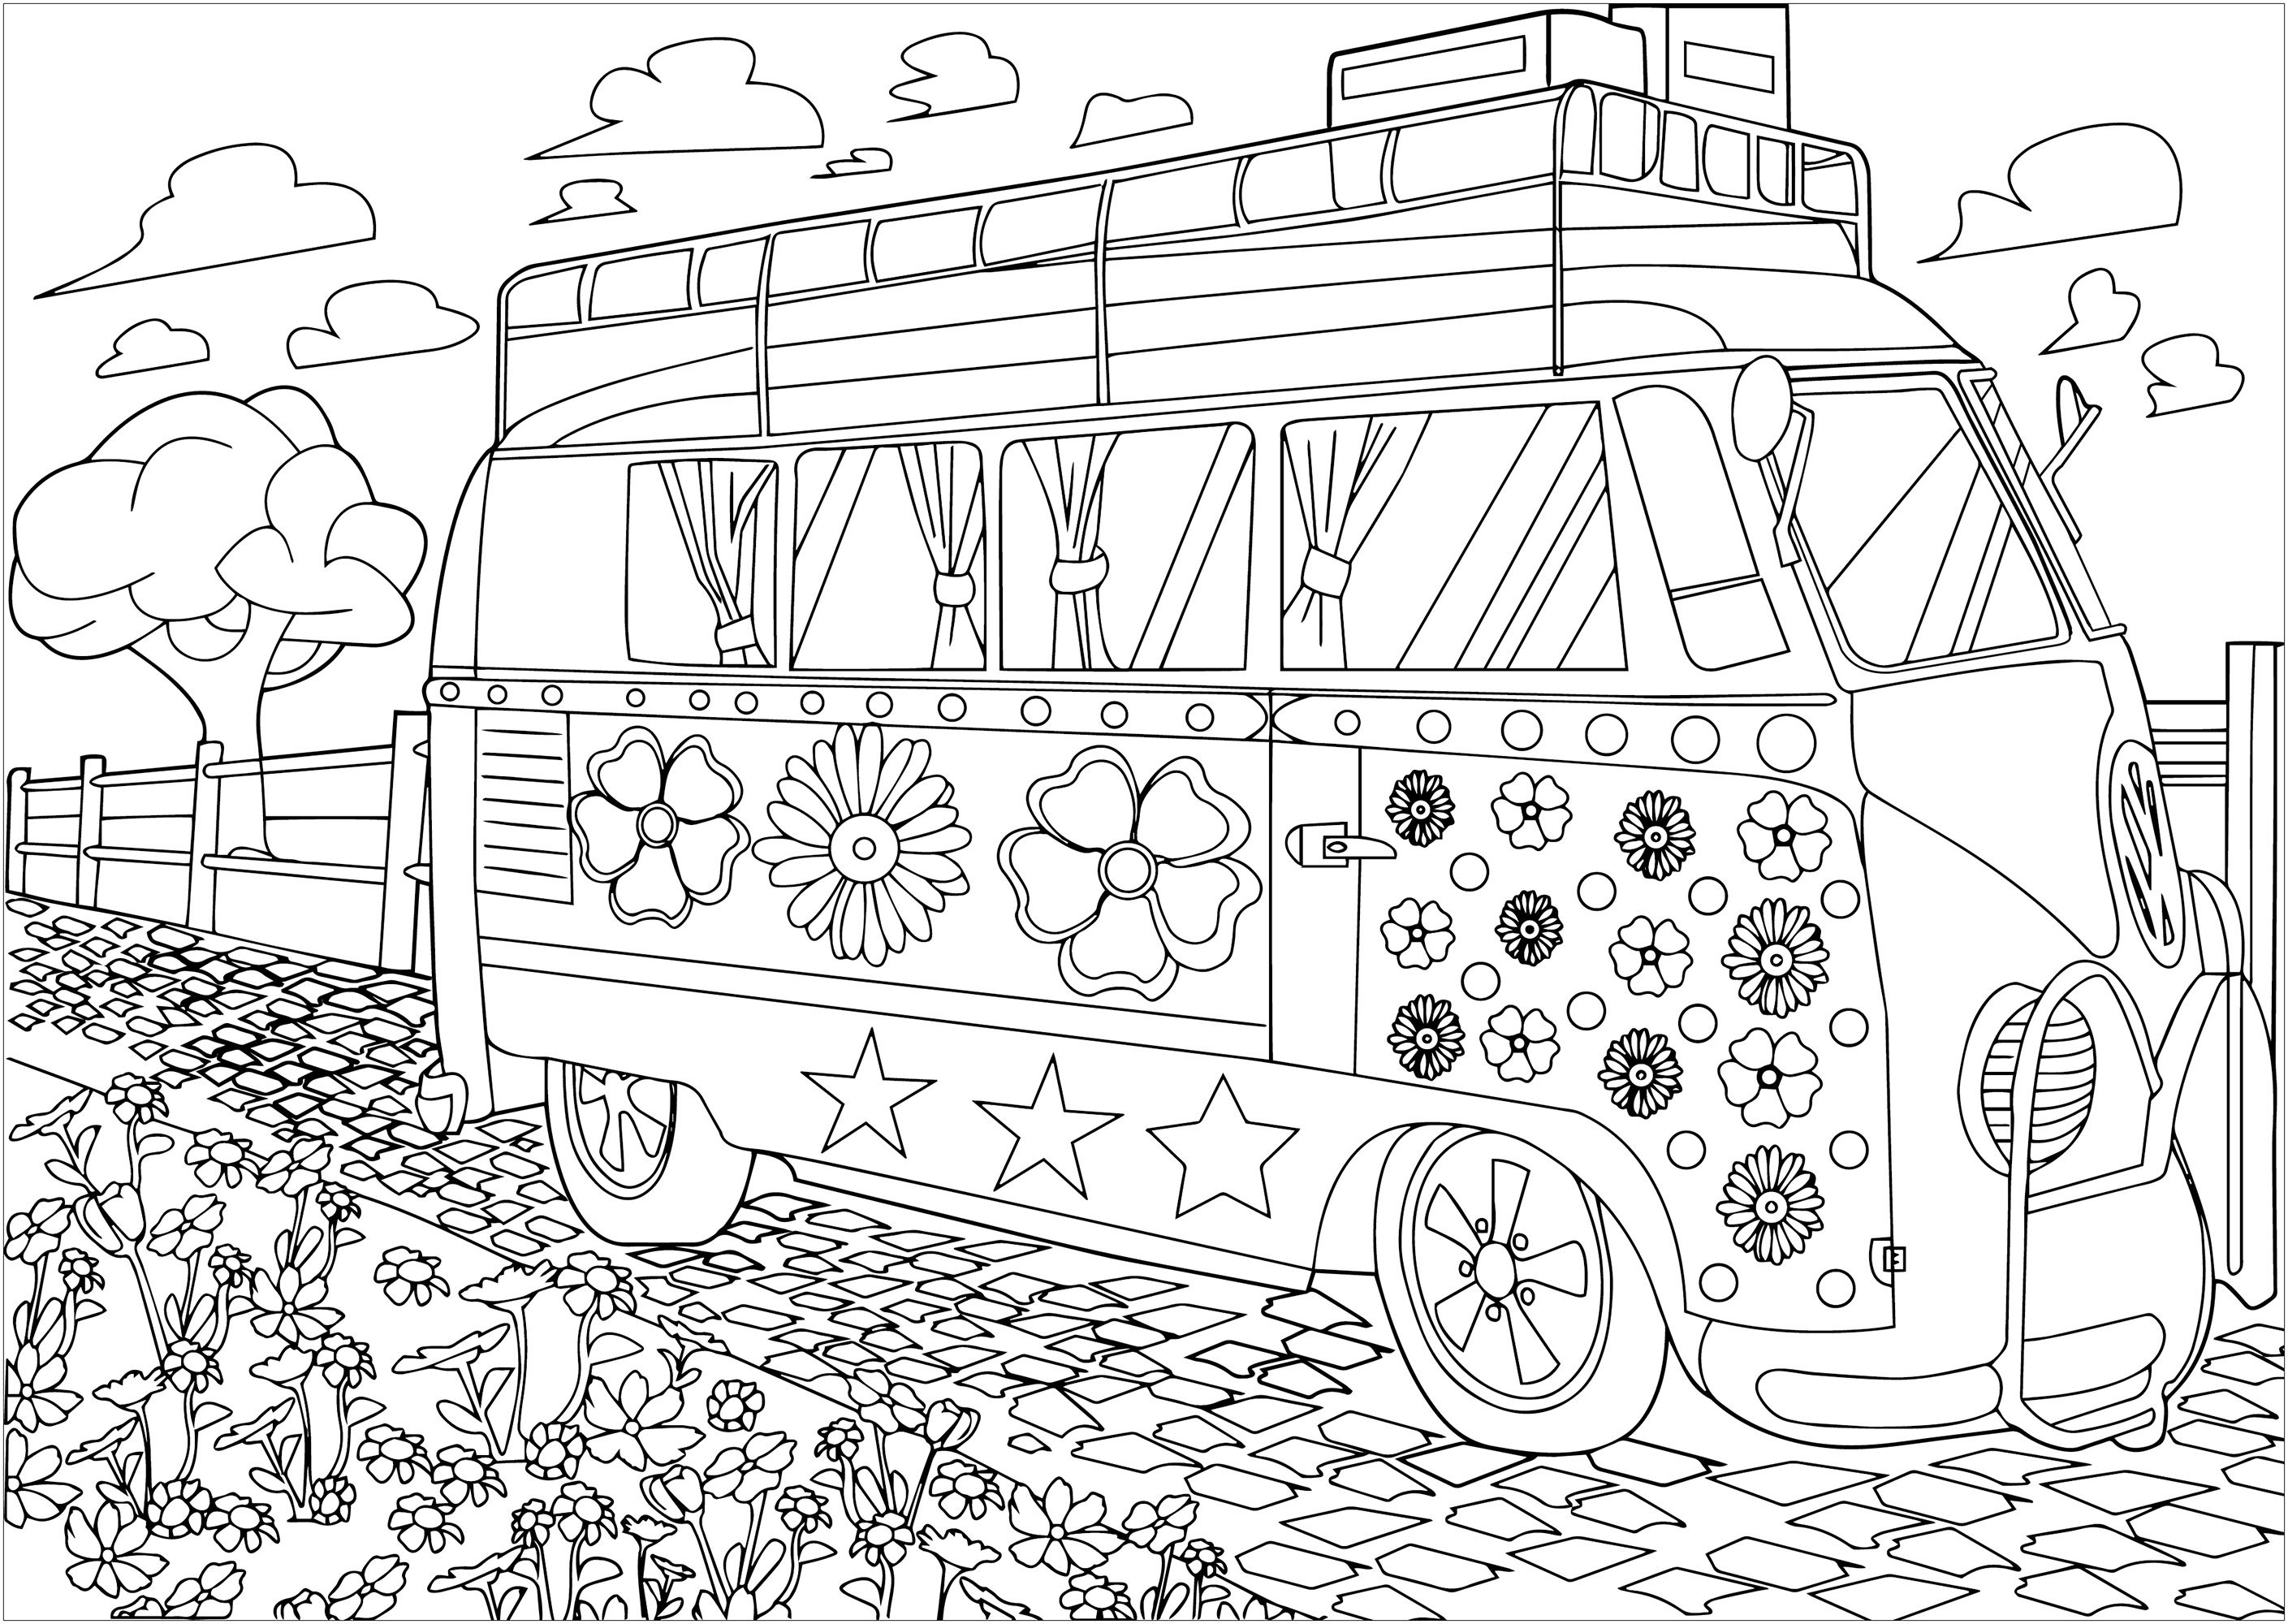 Le combi Volkswagen hippy de Woodstock à colorier. La Volkswagen combi, con la sua vernice colorata e i simboli della pace, divenne il simbolo mobile della controcultura hippie. La sua presenza a Woodstock nel 1969 la rese l'icona immancabile di quest'epoca di liberazione e musica, Artista : Morgan